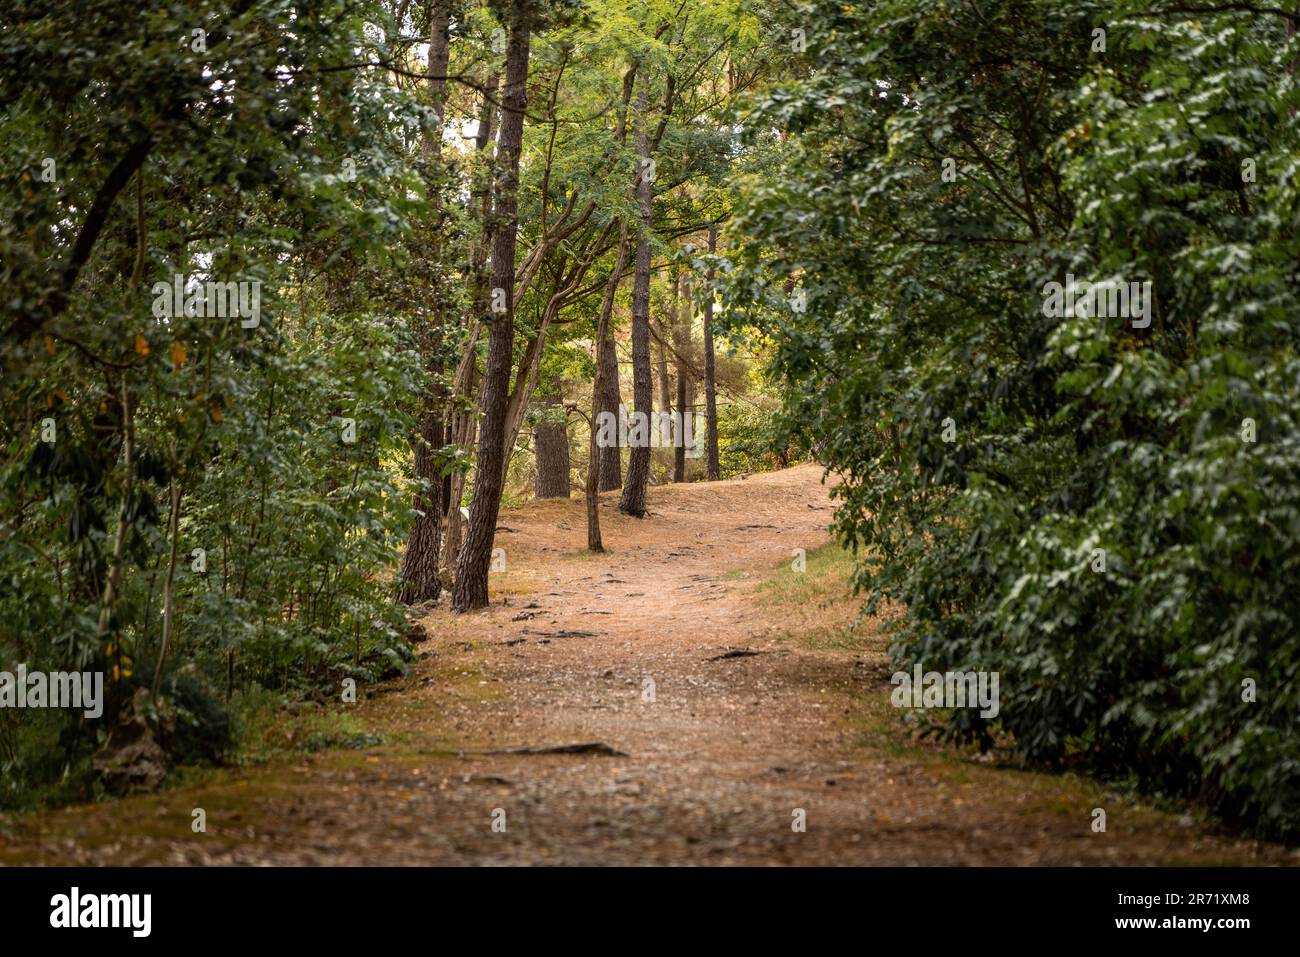 Paesaggio forestale con una strada sterrata che attraversa la foresta. Scena tranquilla nella natura. Foto Stock